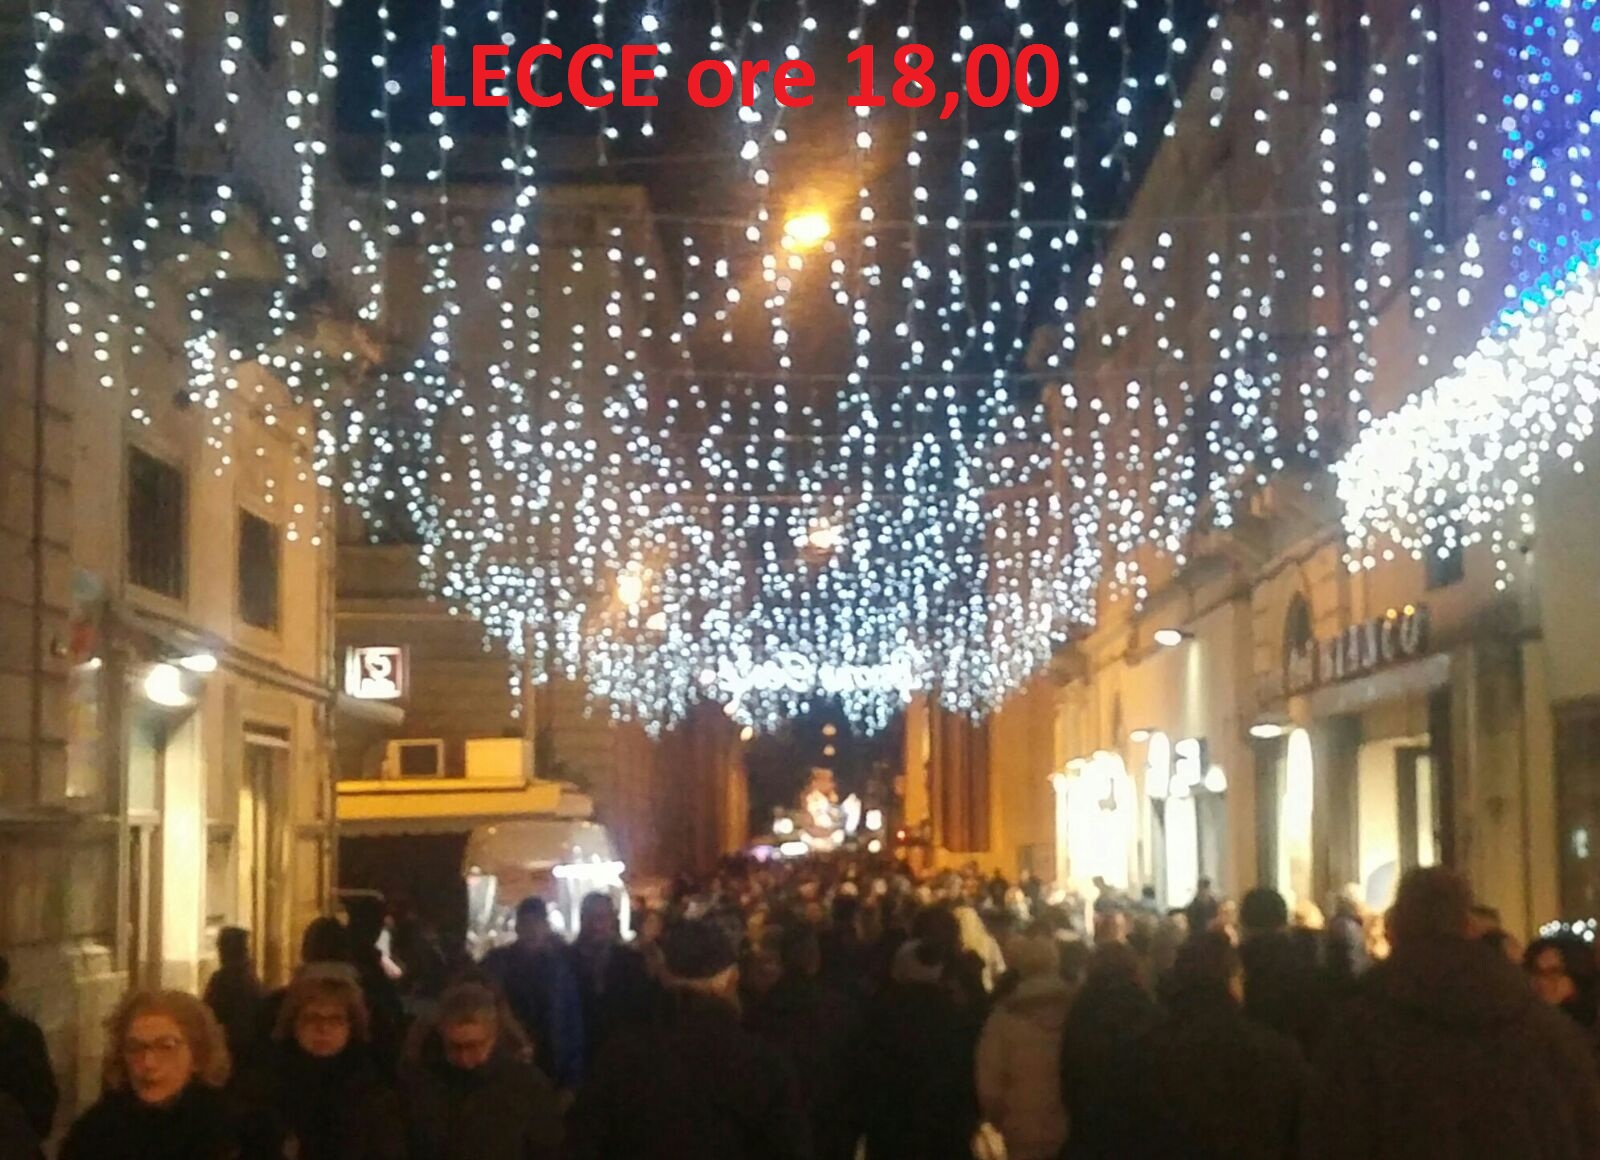 Lecce Natale.Natale 8 Dicembre Ore 18 00 Lecce E Brindisi Trova Le Differenze New Pam It Informiamo Brindisi E Provincia